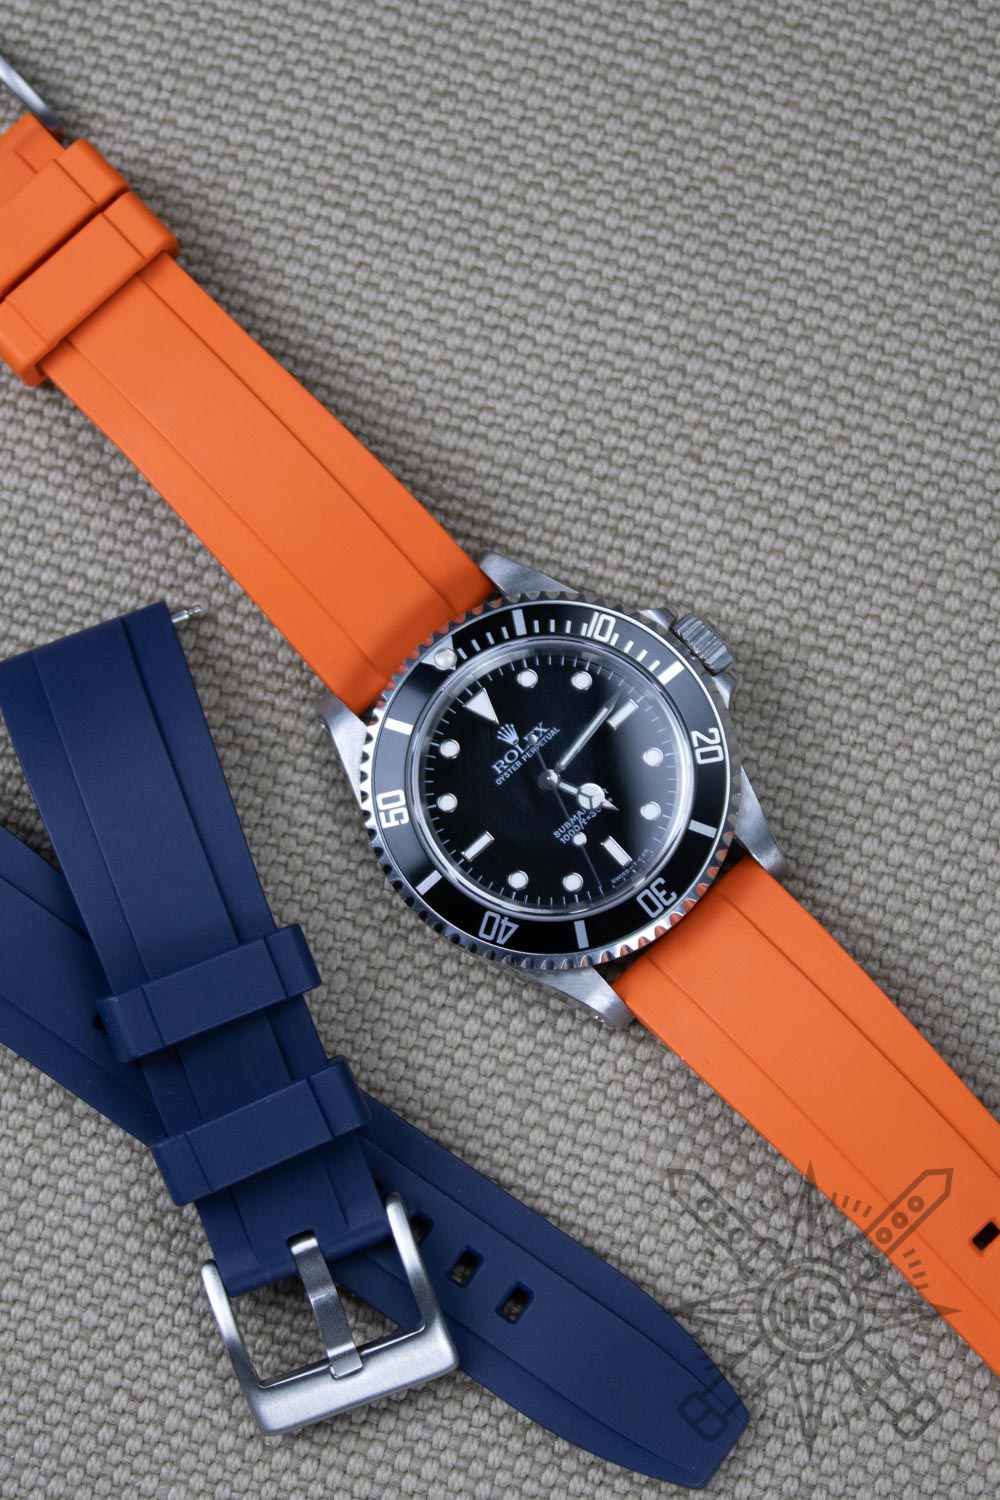 Rolex Submariner on a orange FKM rubber watch band